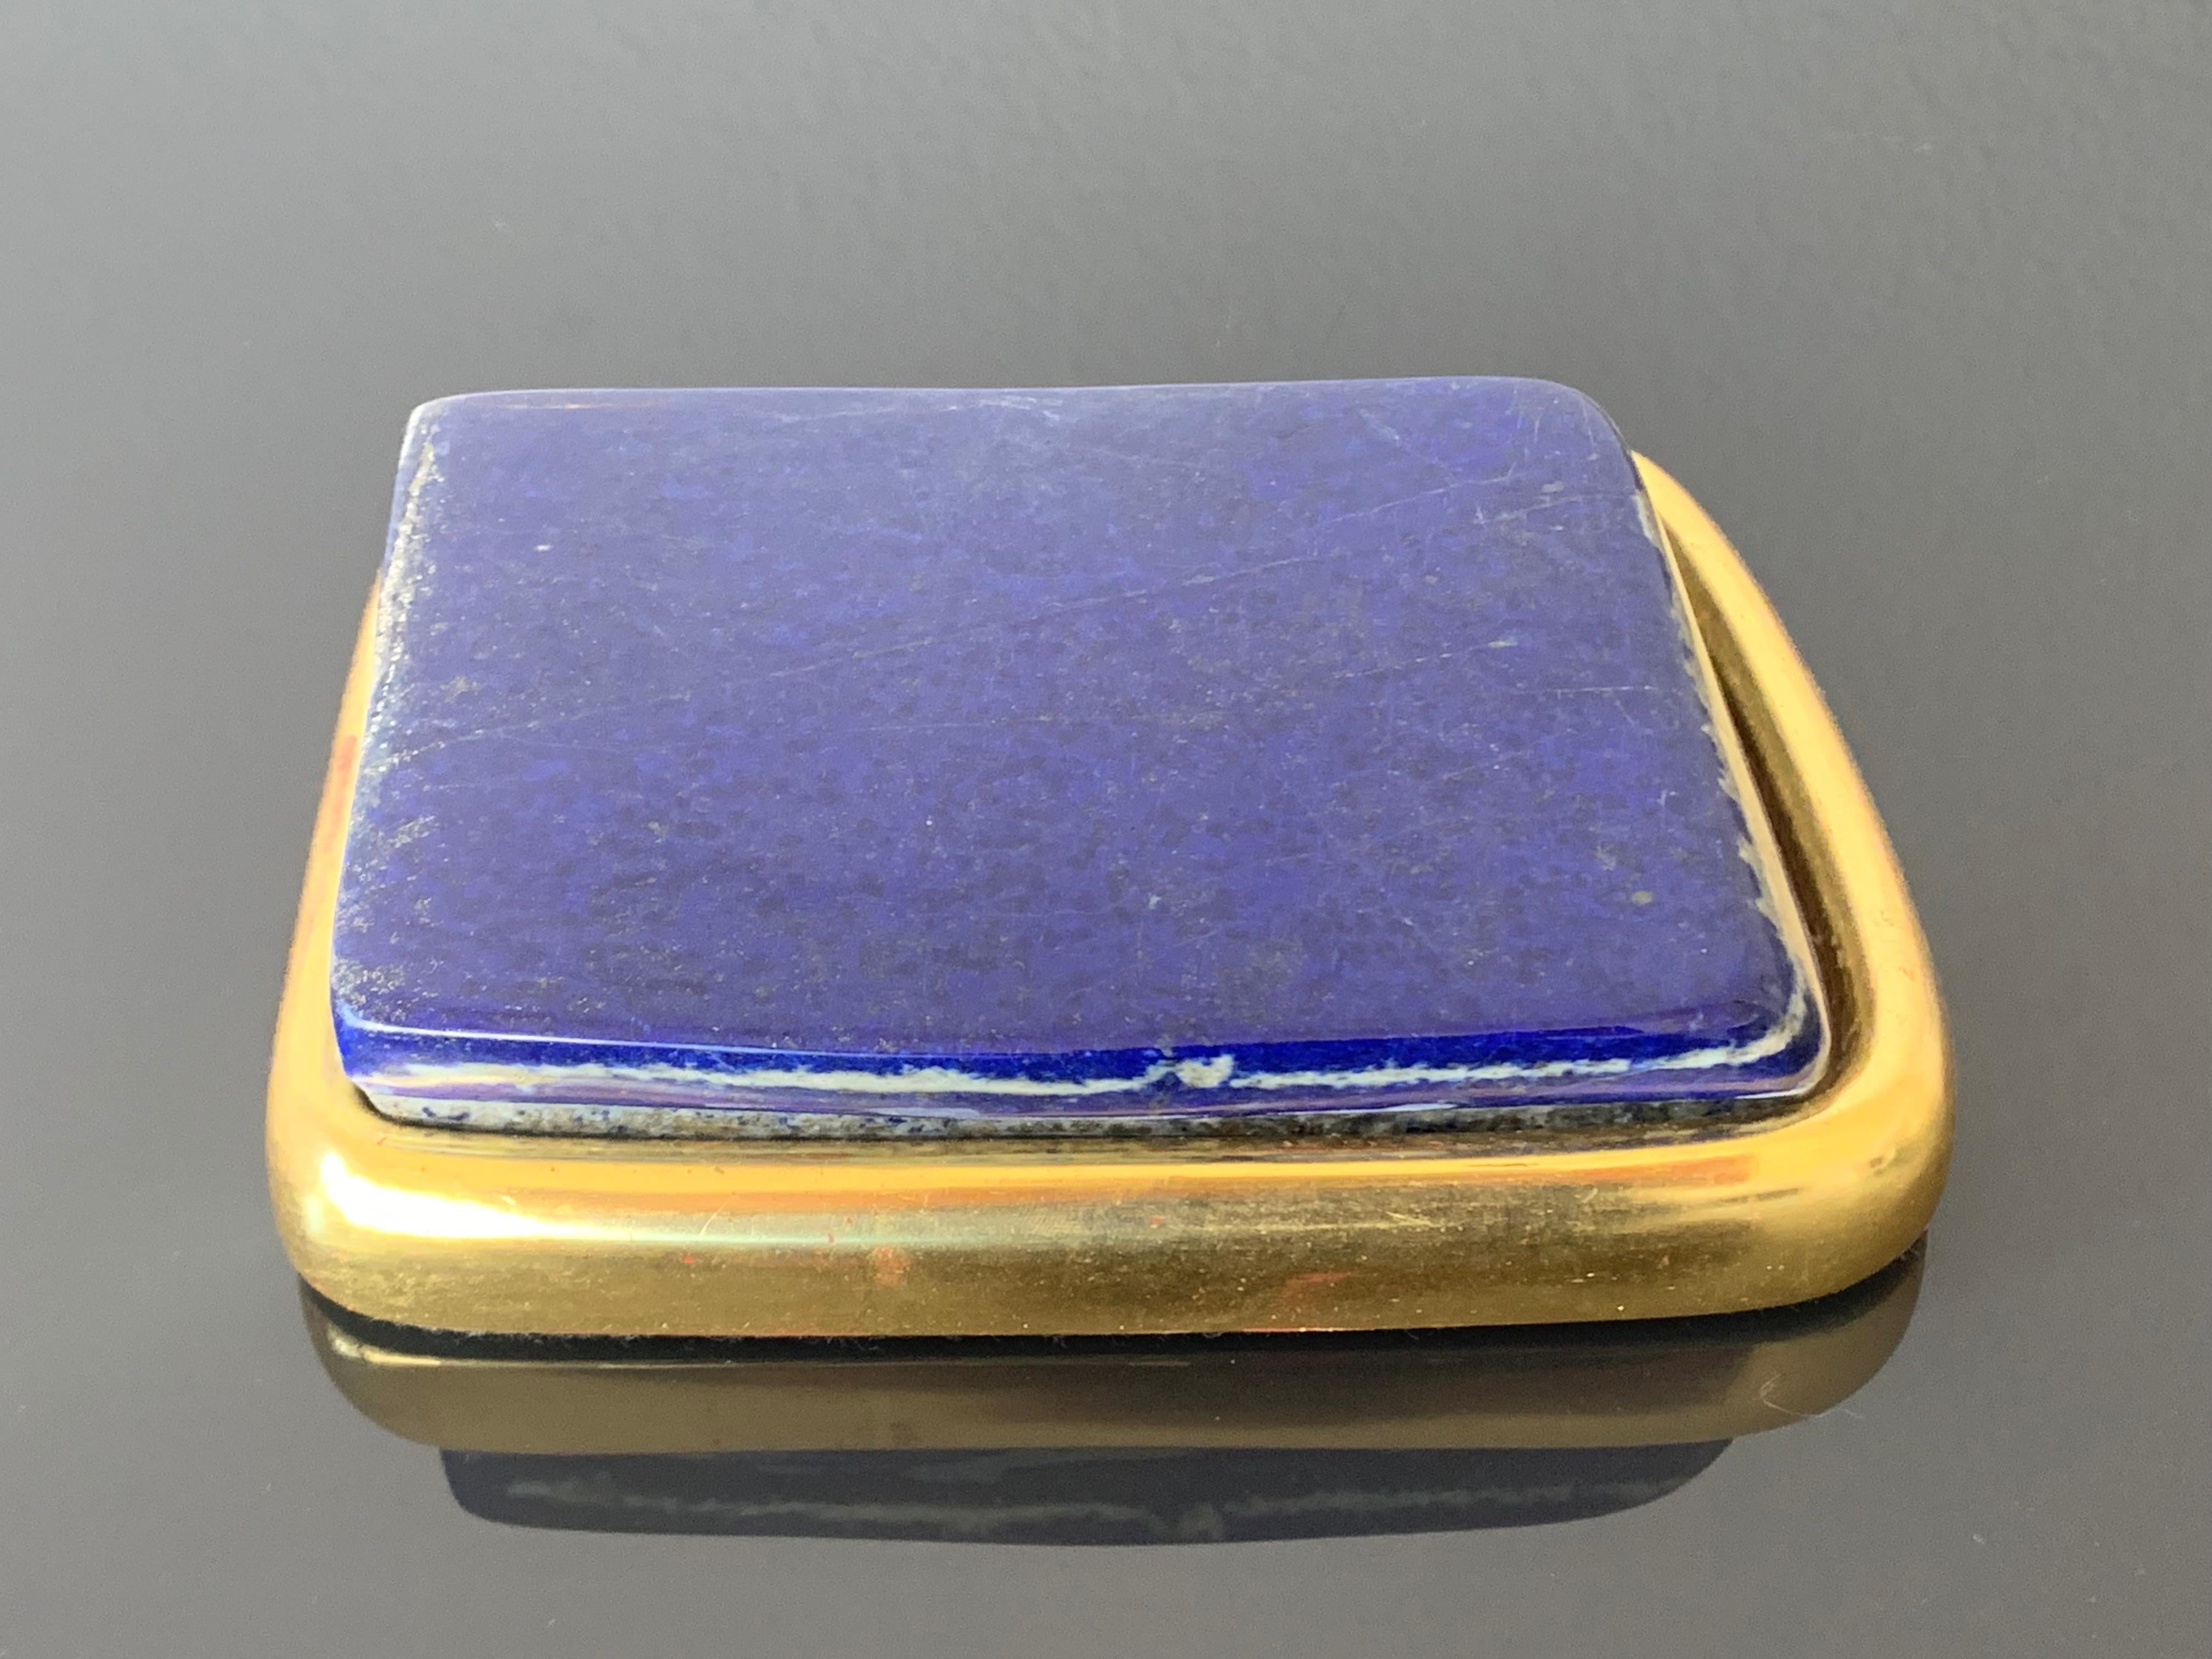 Large lapis lazuli paperweight in 22-karat gold leaf setting.